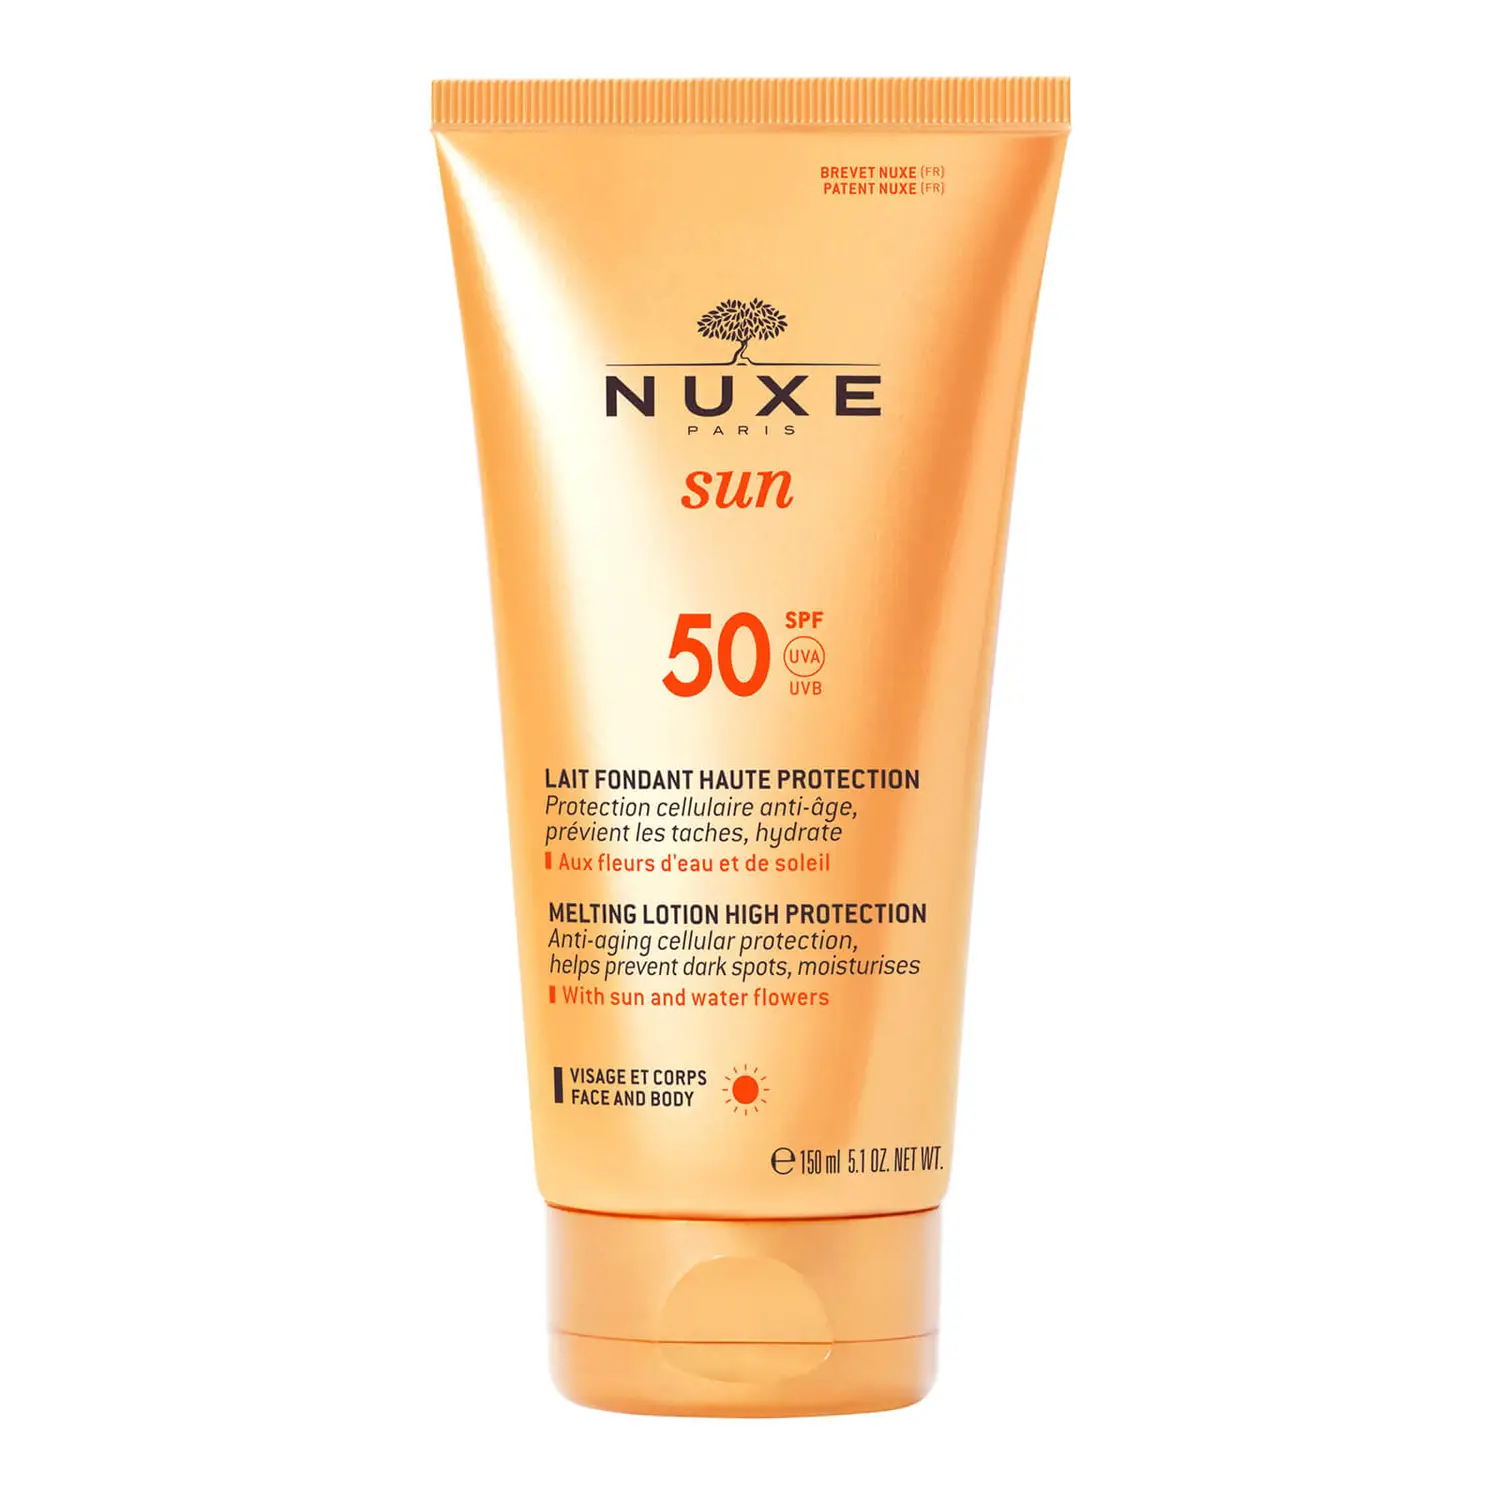 NUXE ALTA PROTECCIÓN SOLAR Leche Fundente Alta Protección SPF 50, NUXE Sun 150 ml. Leche protectora solar rostro y cuerpo: protección celular antiedad, hidratación